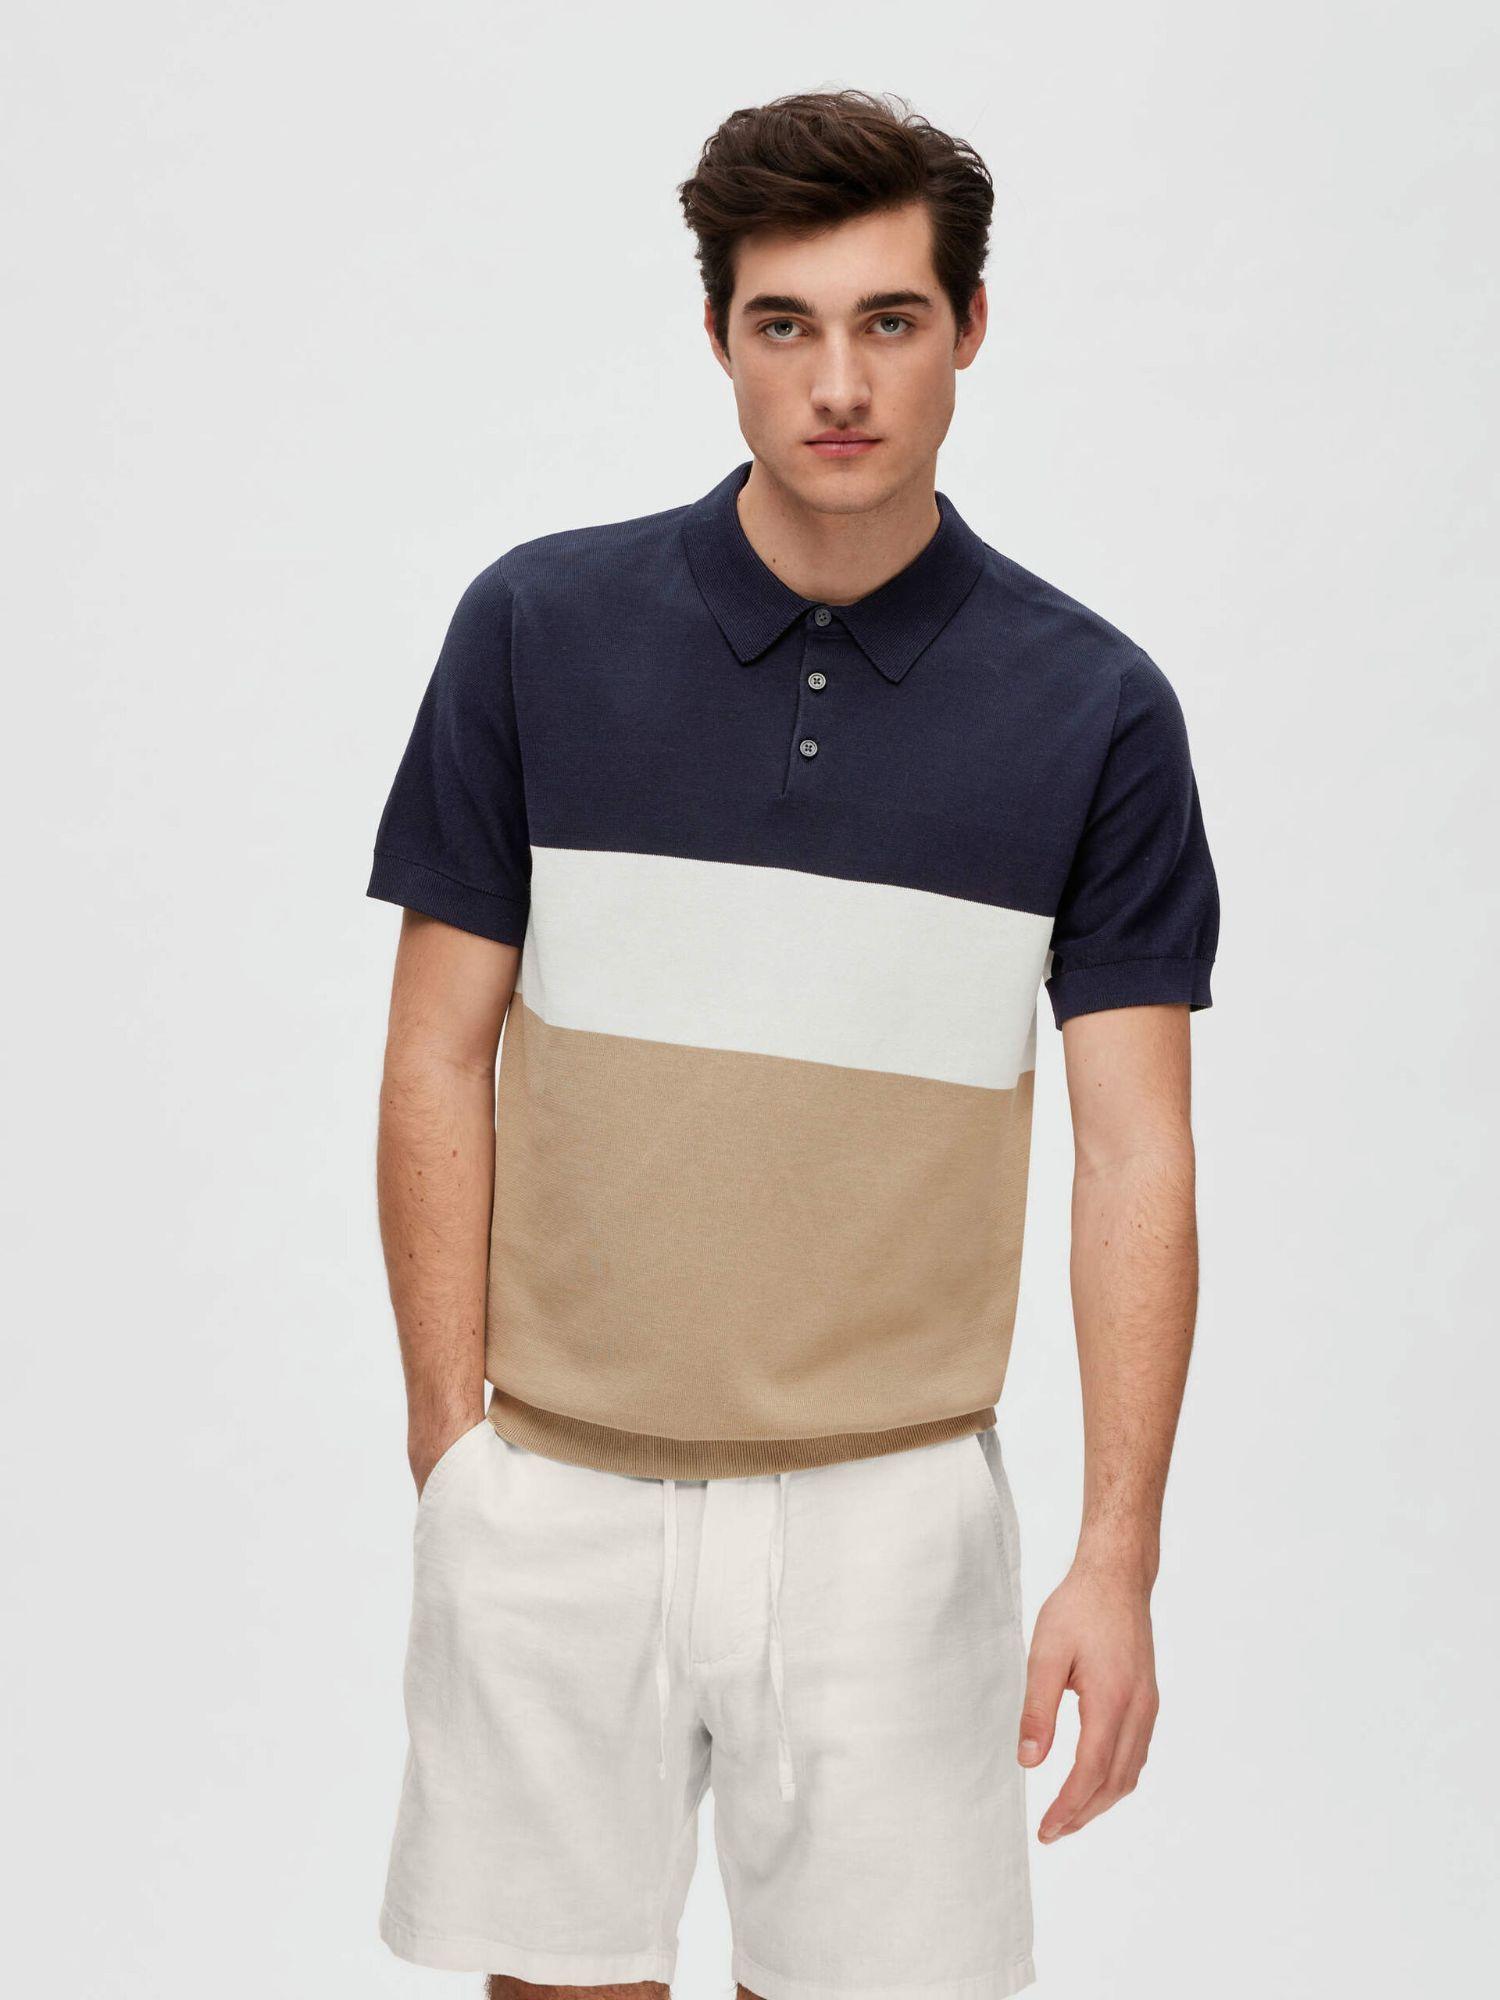 navy blue colourblocked polo t-shirt